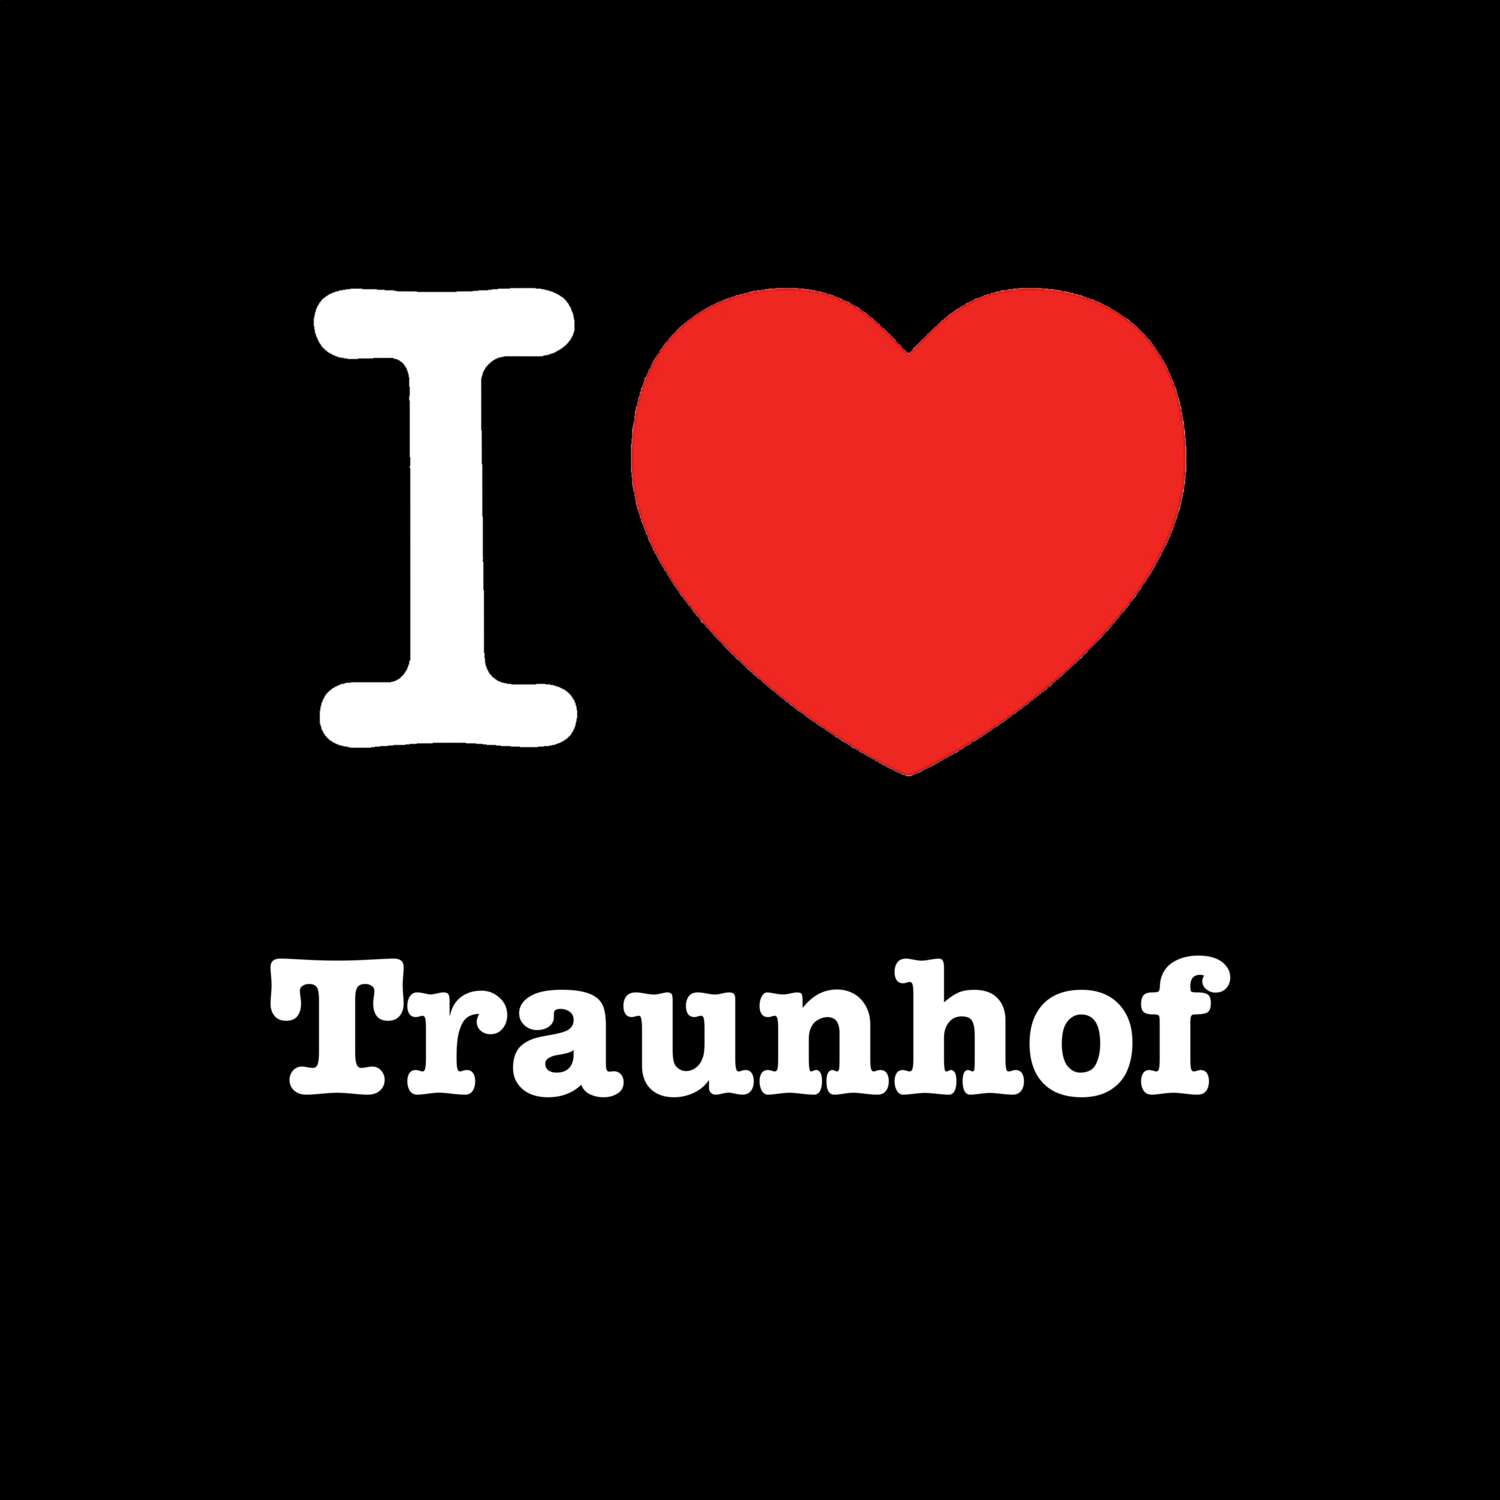 Traunhof T-Shirt »I love«